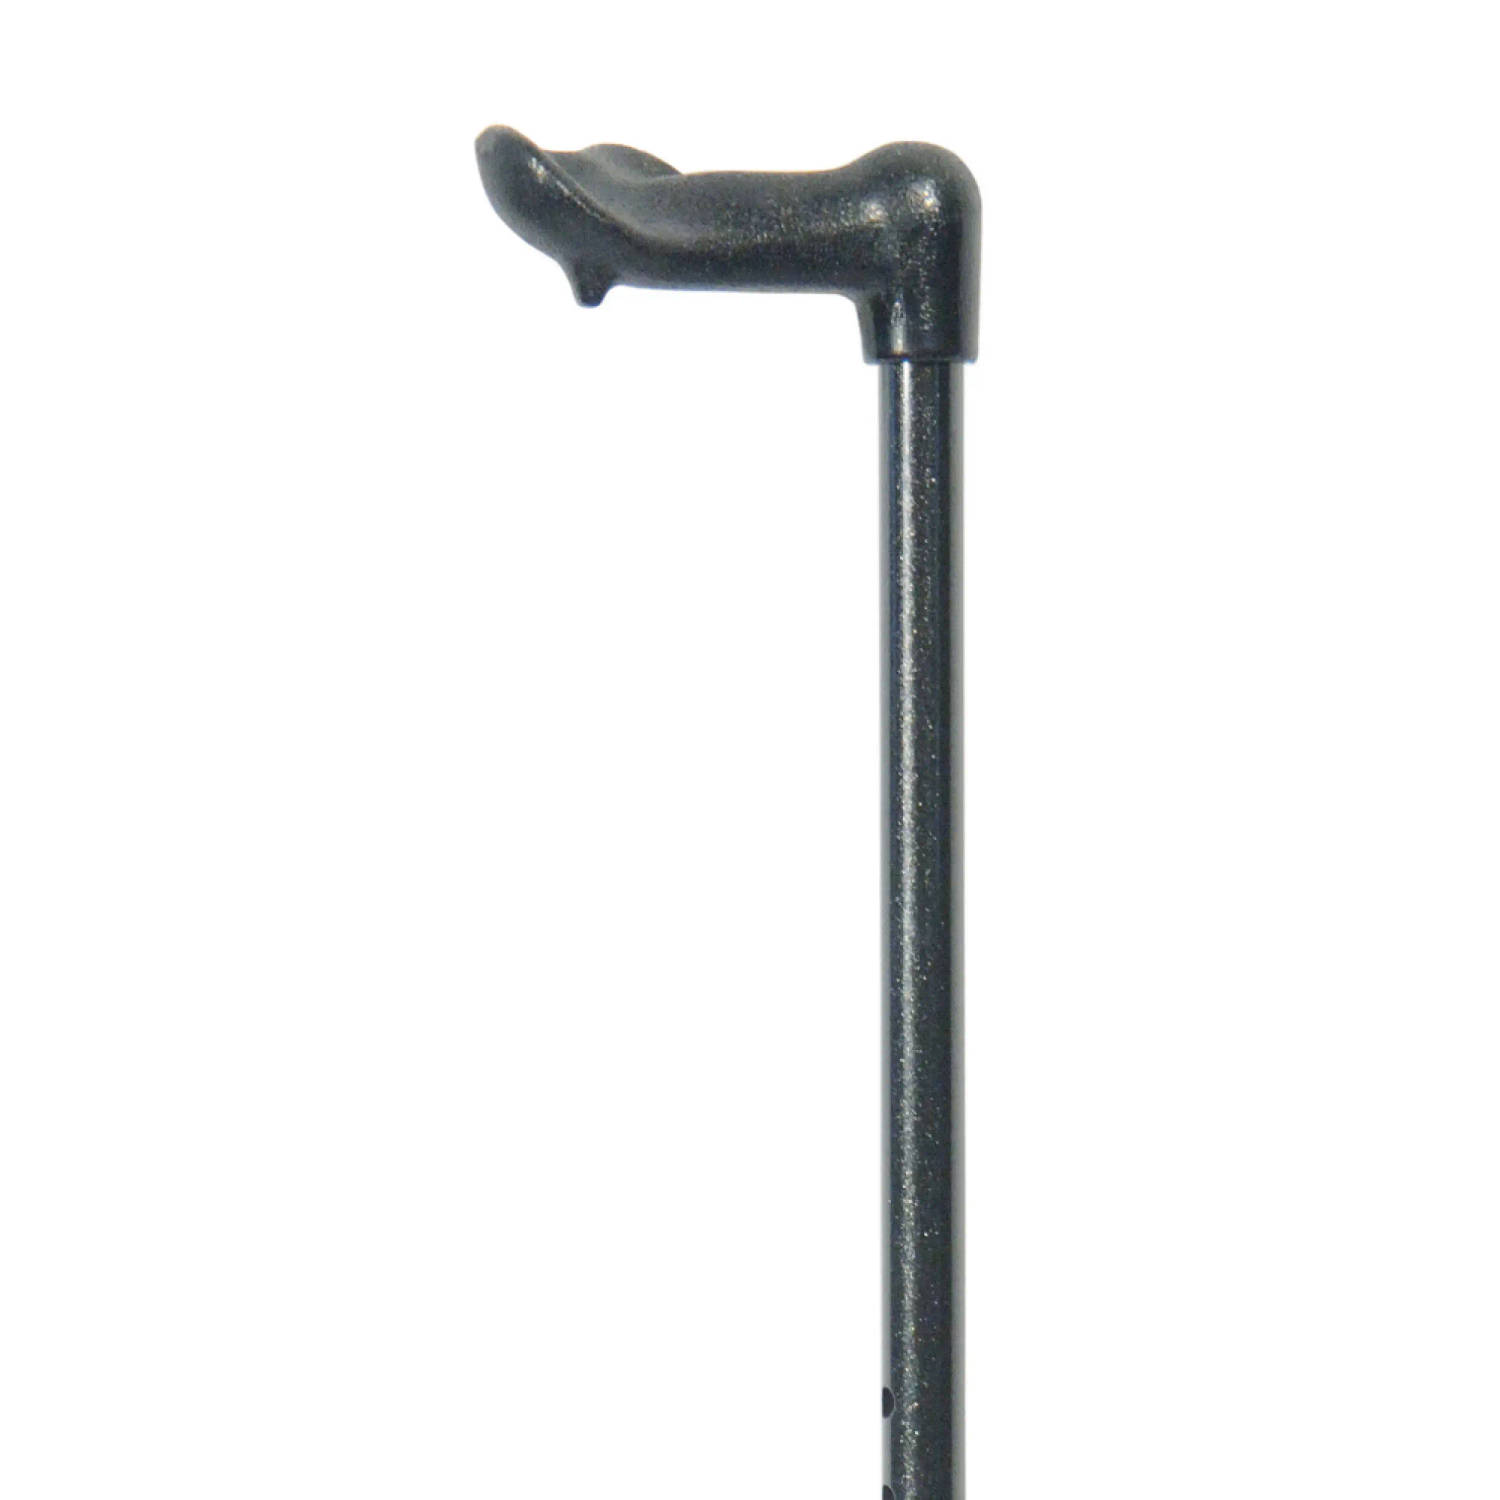 Classic Canes - Verstelbare wandelstok - Ergonomisch handvat - Links - Wandelstokken - Voor heren en dames - Roestvrijstaal - Zwart - Lengte 82 - 105 cm - Wandelstok verstelbaar